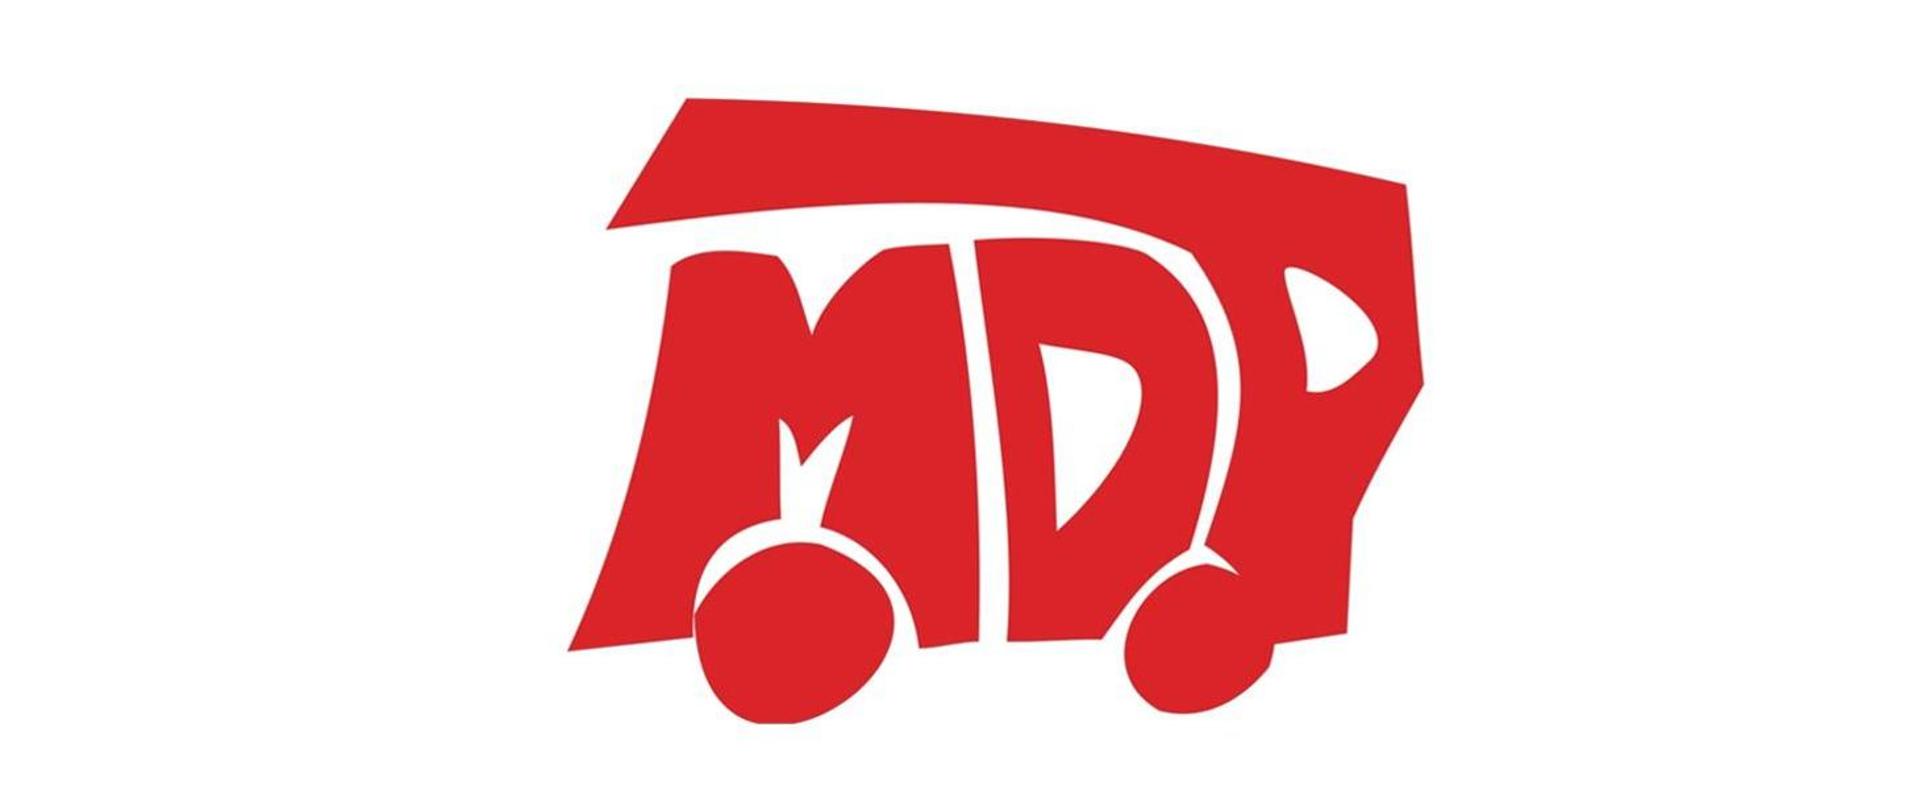 LOGO MDP - czerwony napis na białym tle